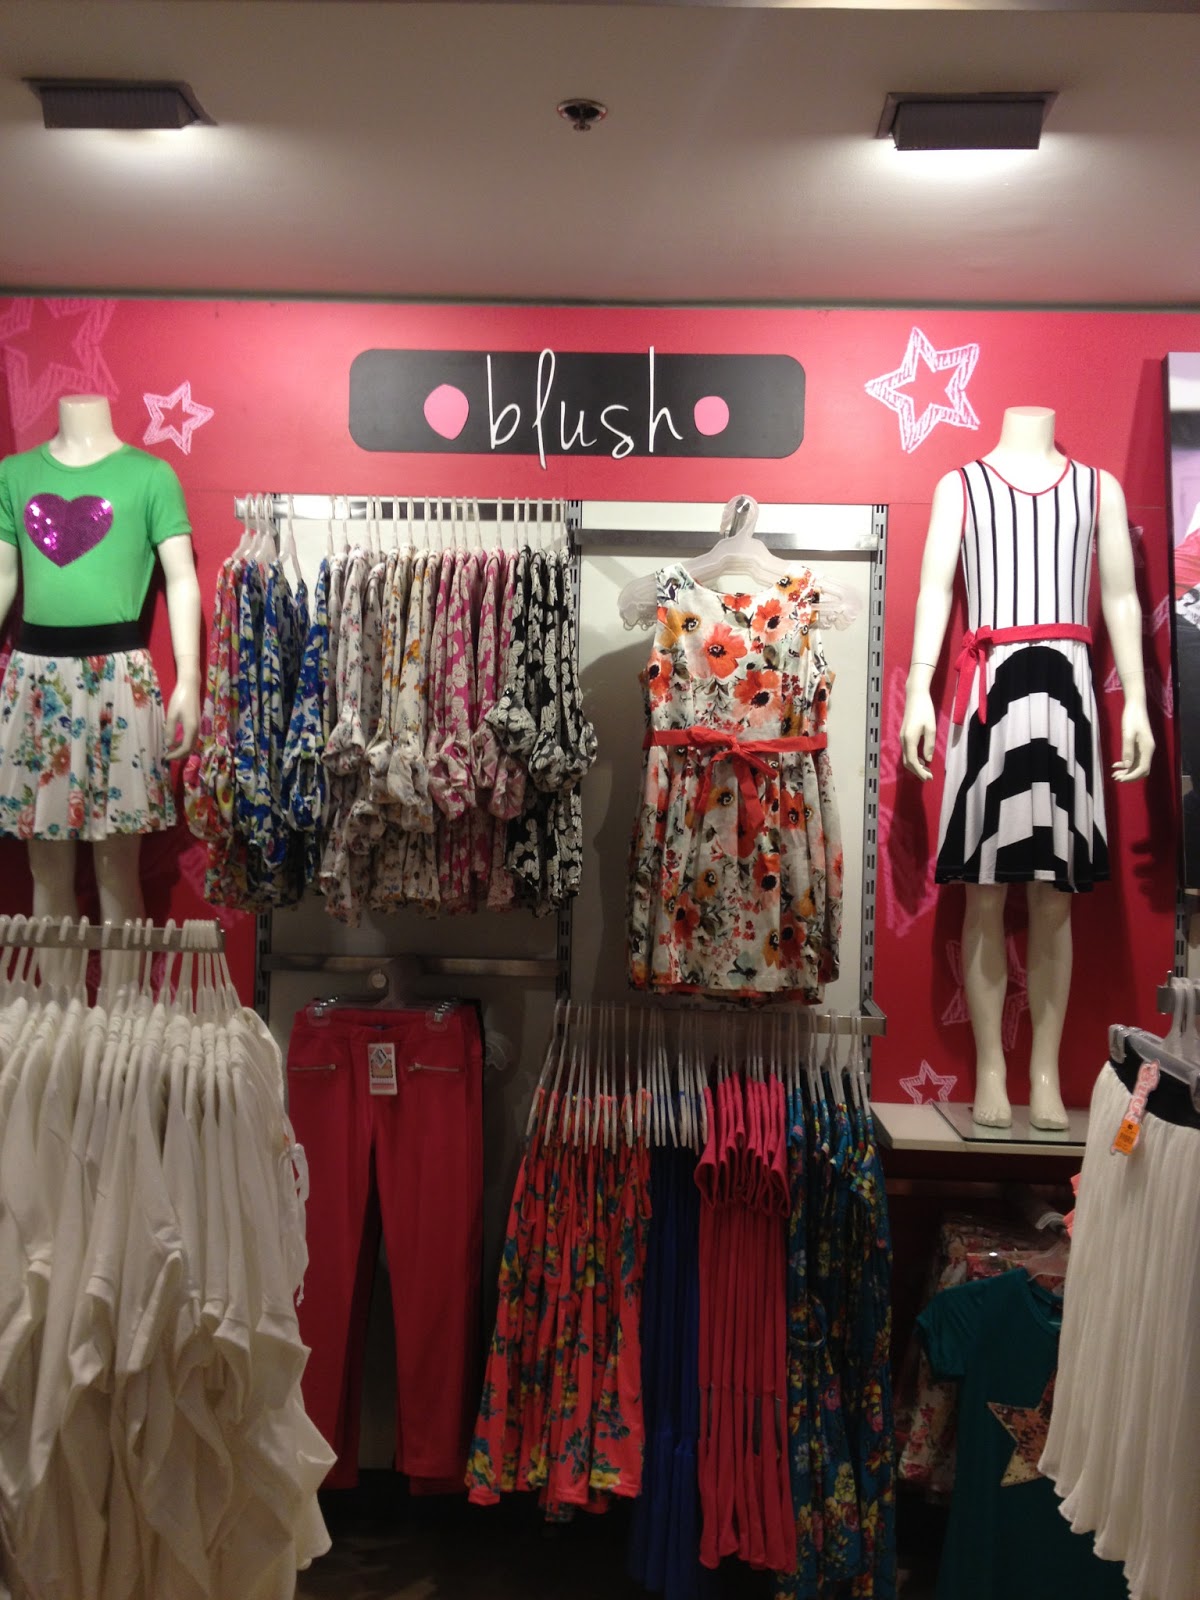 Blush - Clothing store